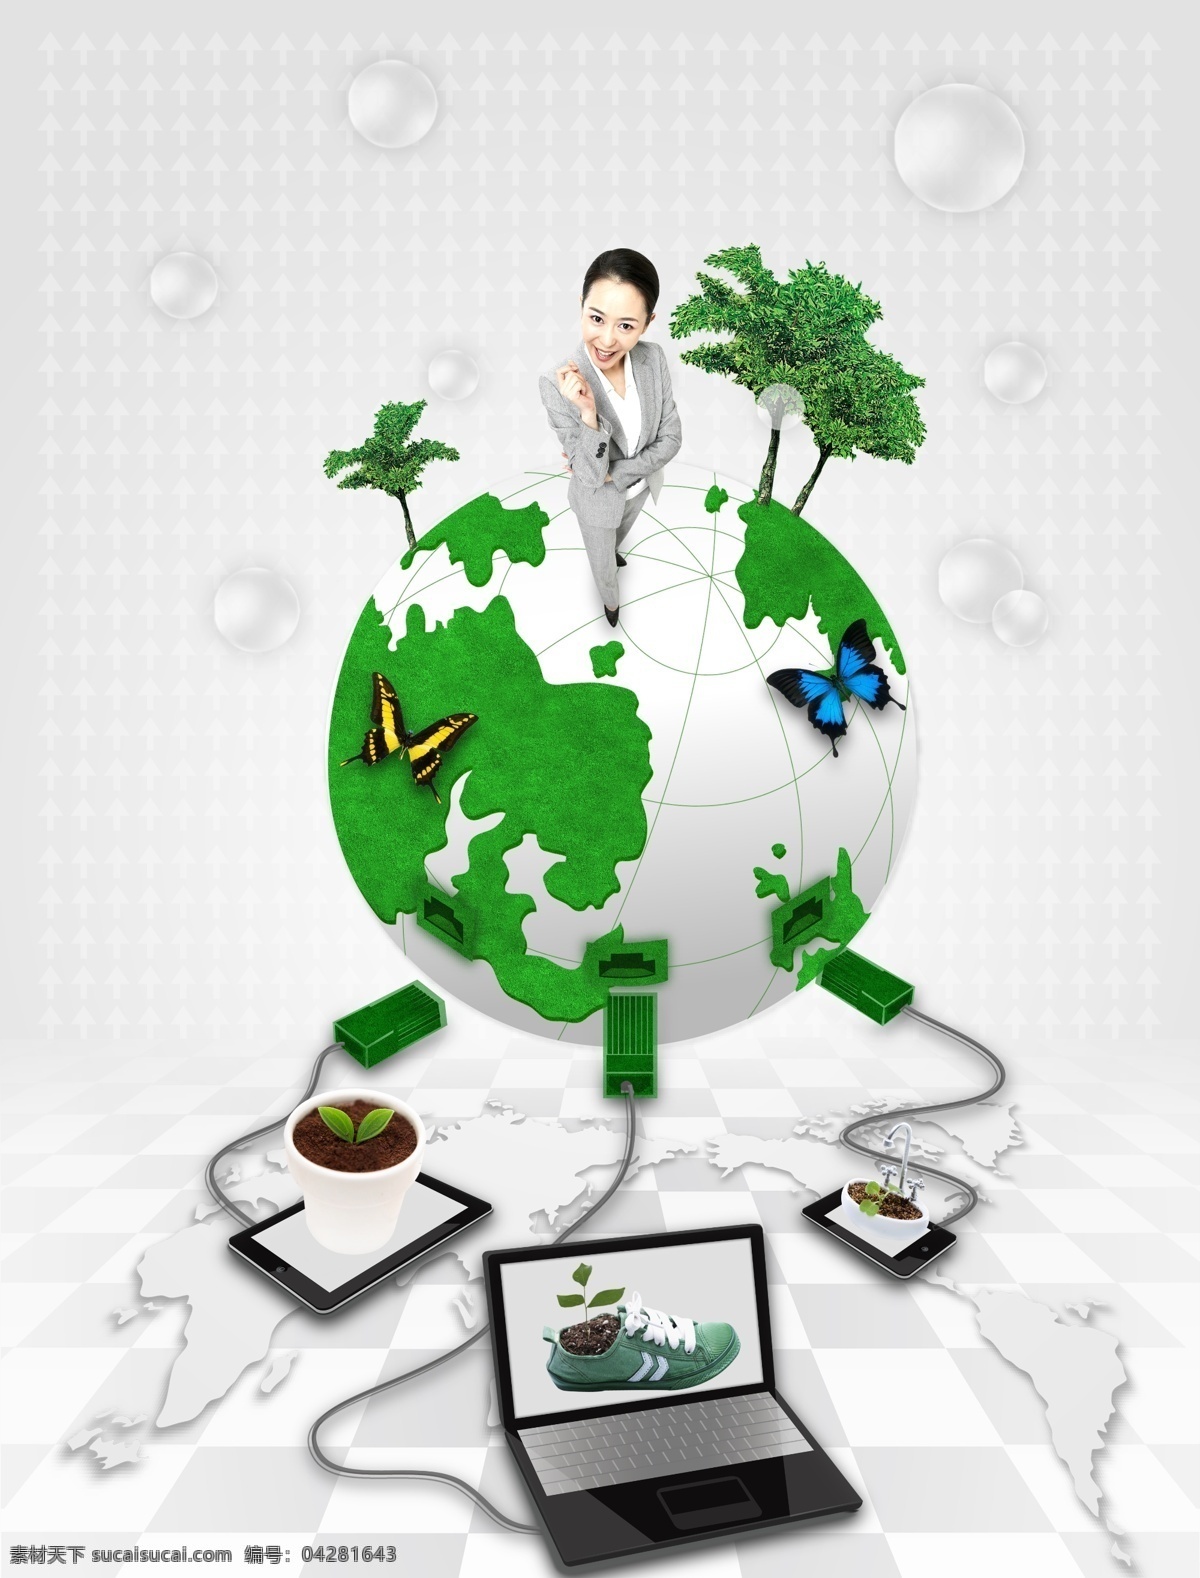 绿色 地球 职业女性 绿色环保 环境保护 环保 节能 绿色能源 生态保护 生态平衡 绿色地球 蝴蝶 电脑 盆栽 树木 广告设计模板 psd素材 白色